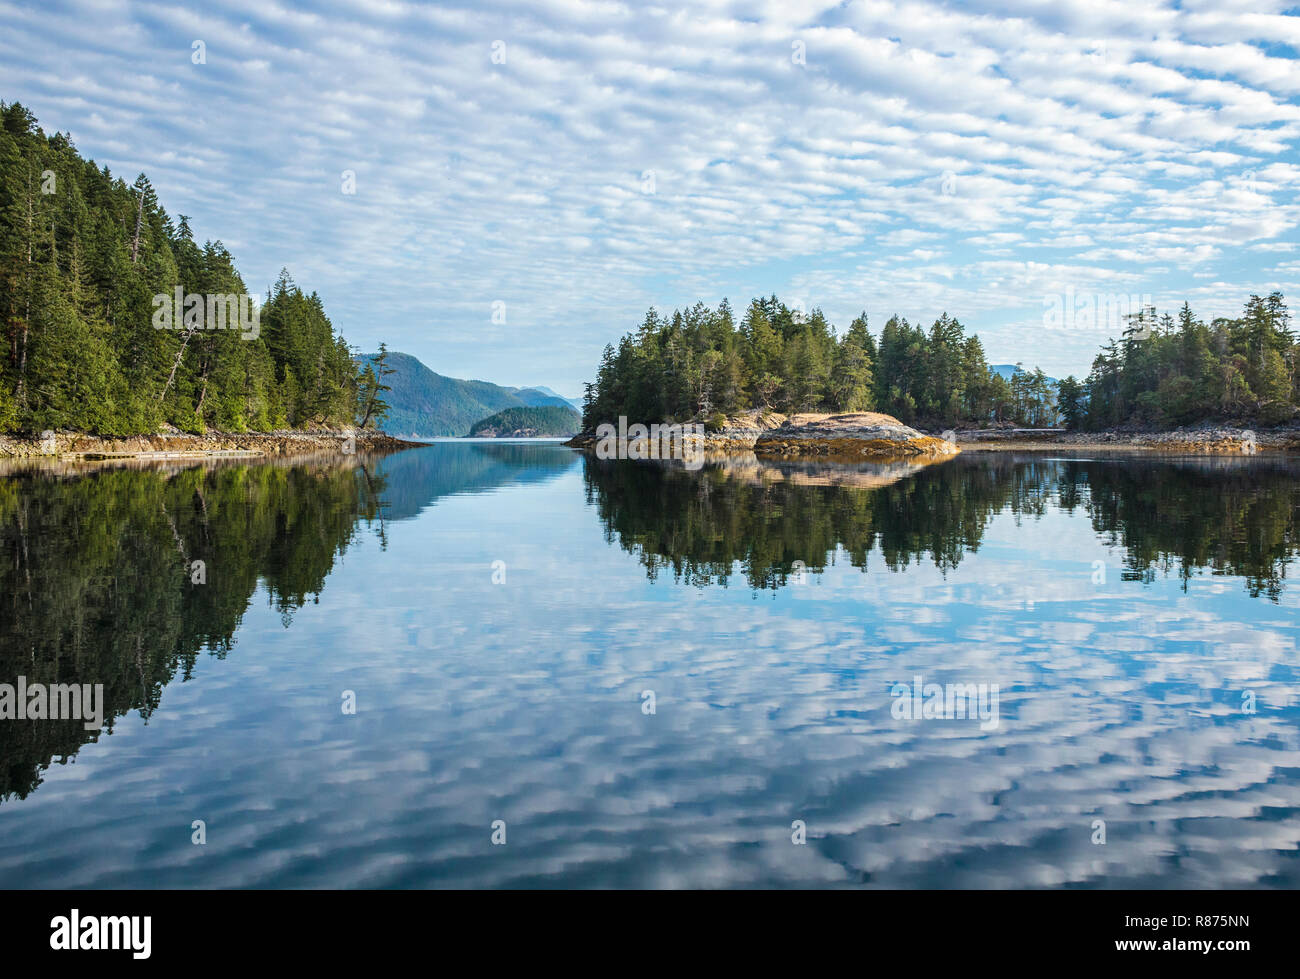 Die bewaldeten Inseln, intertidal Küstenlinien, blauer Himmel und Wolken fischgrätenmuster sind im Wasser auf einem ruhigen Morgen in Küstengebieten, British Columbia nieder. Stockfoto